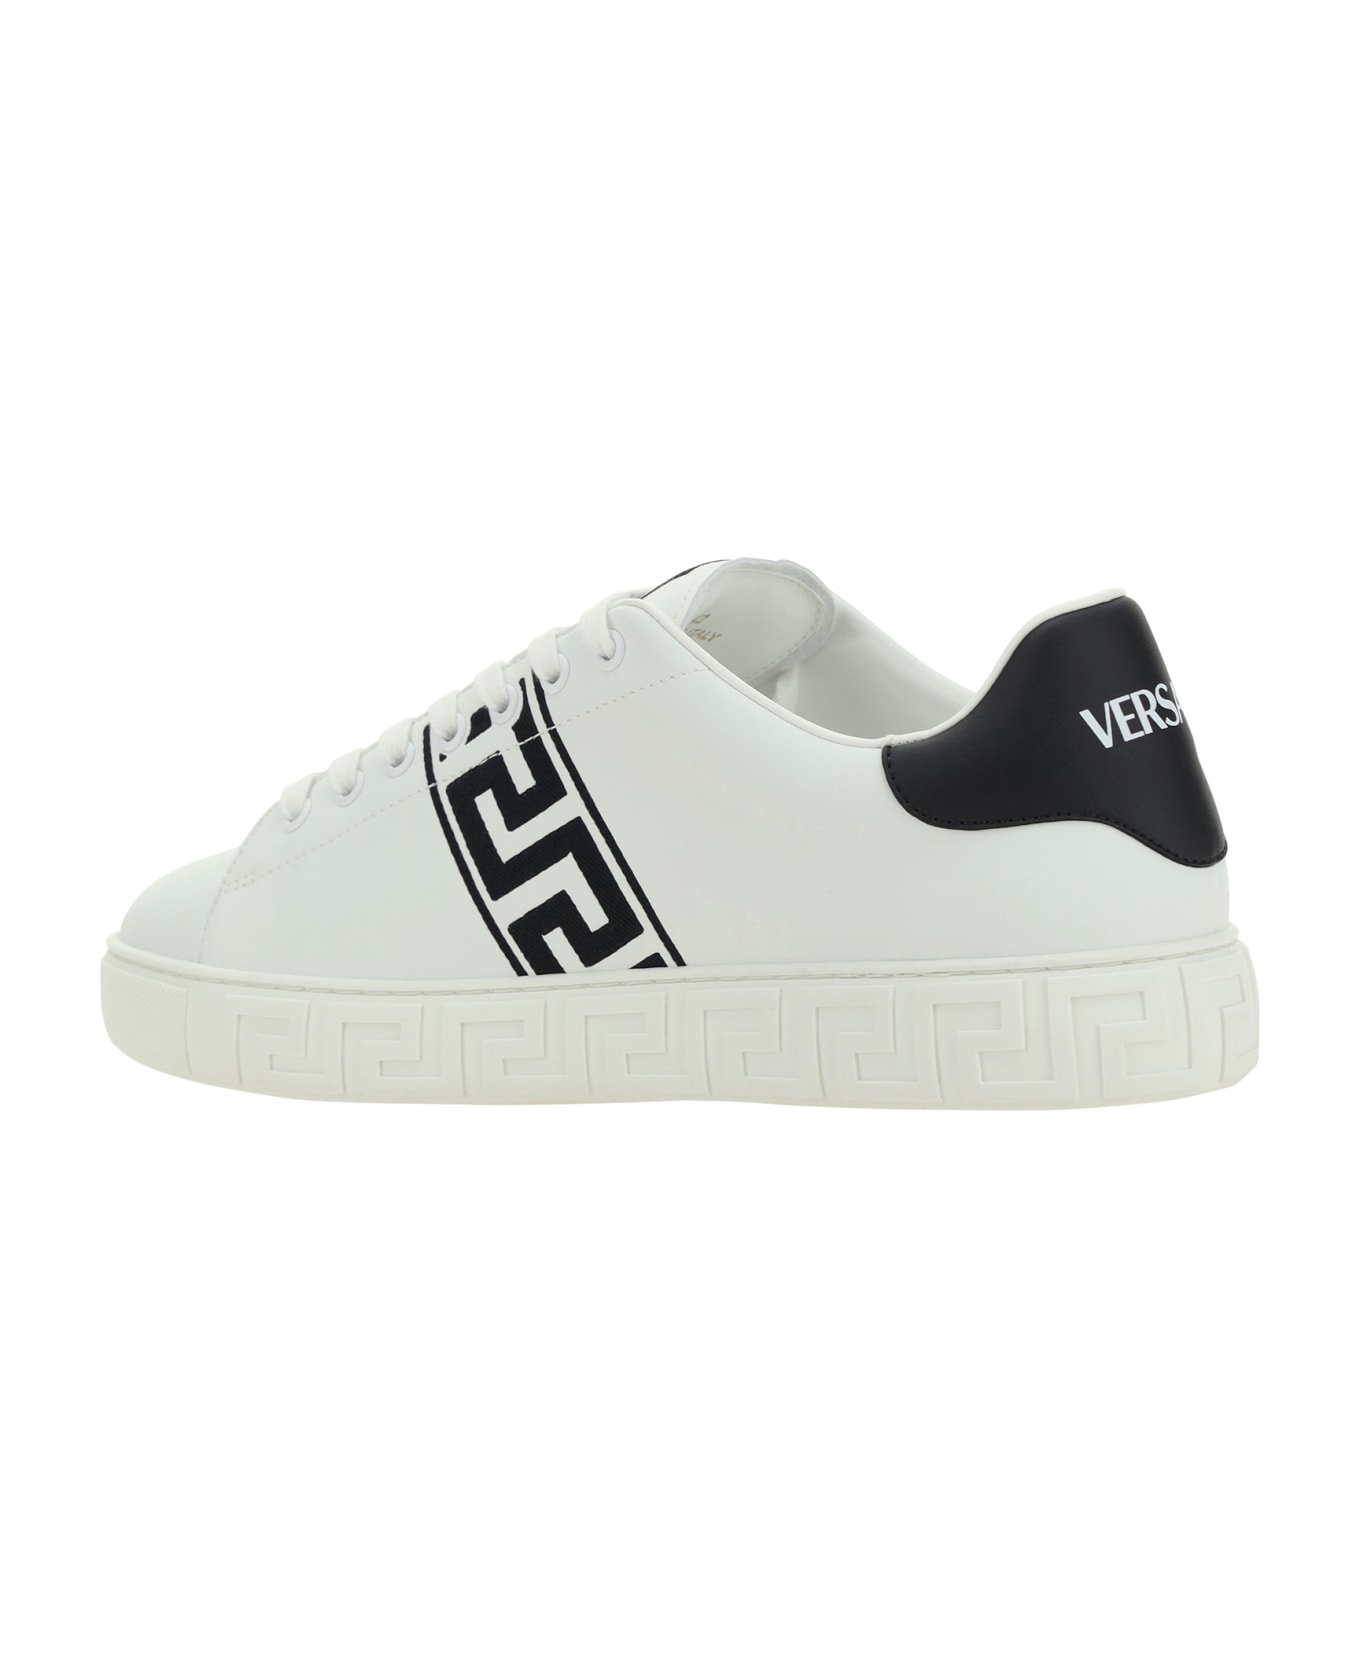 Versace Low Top Sneakers - WhiteBlack